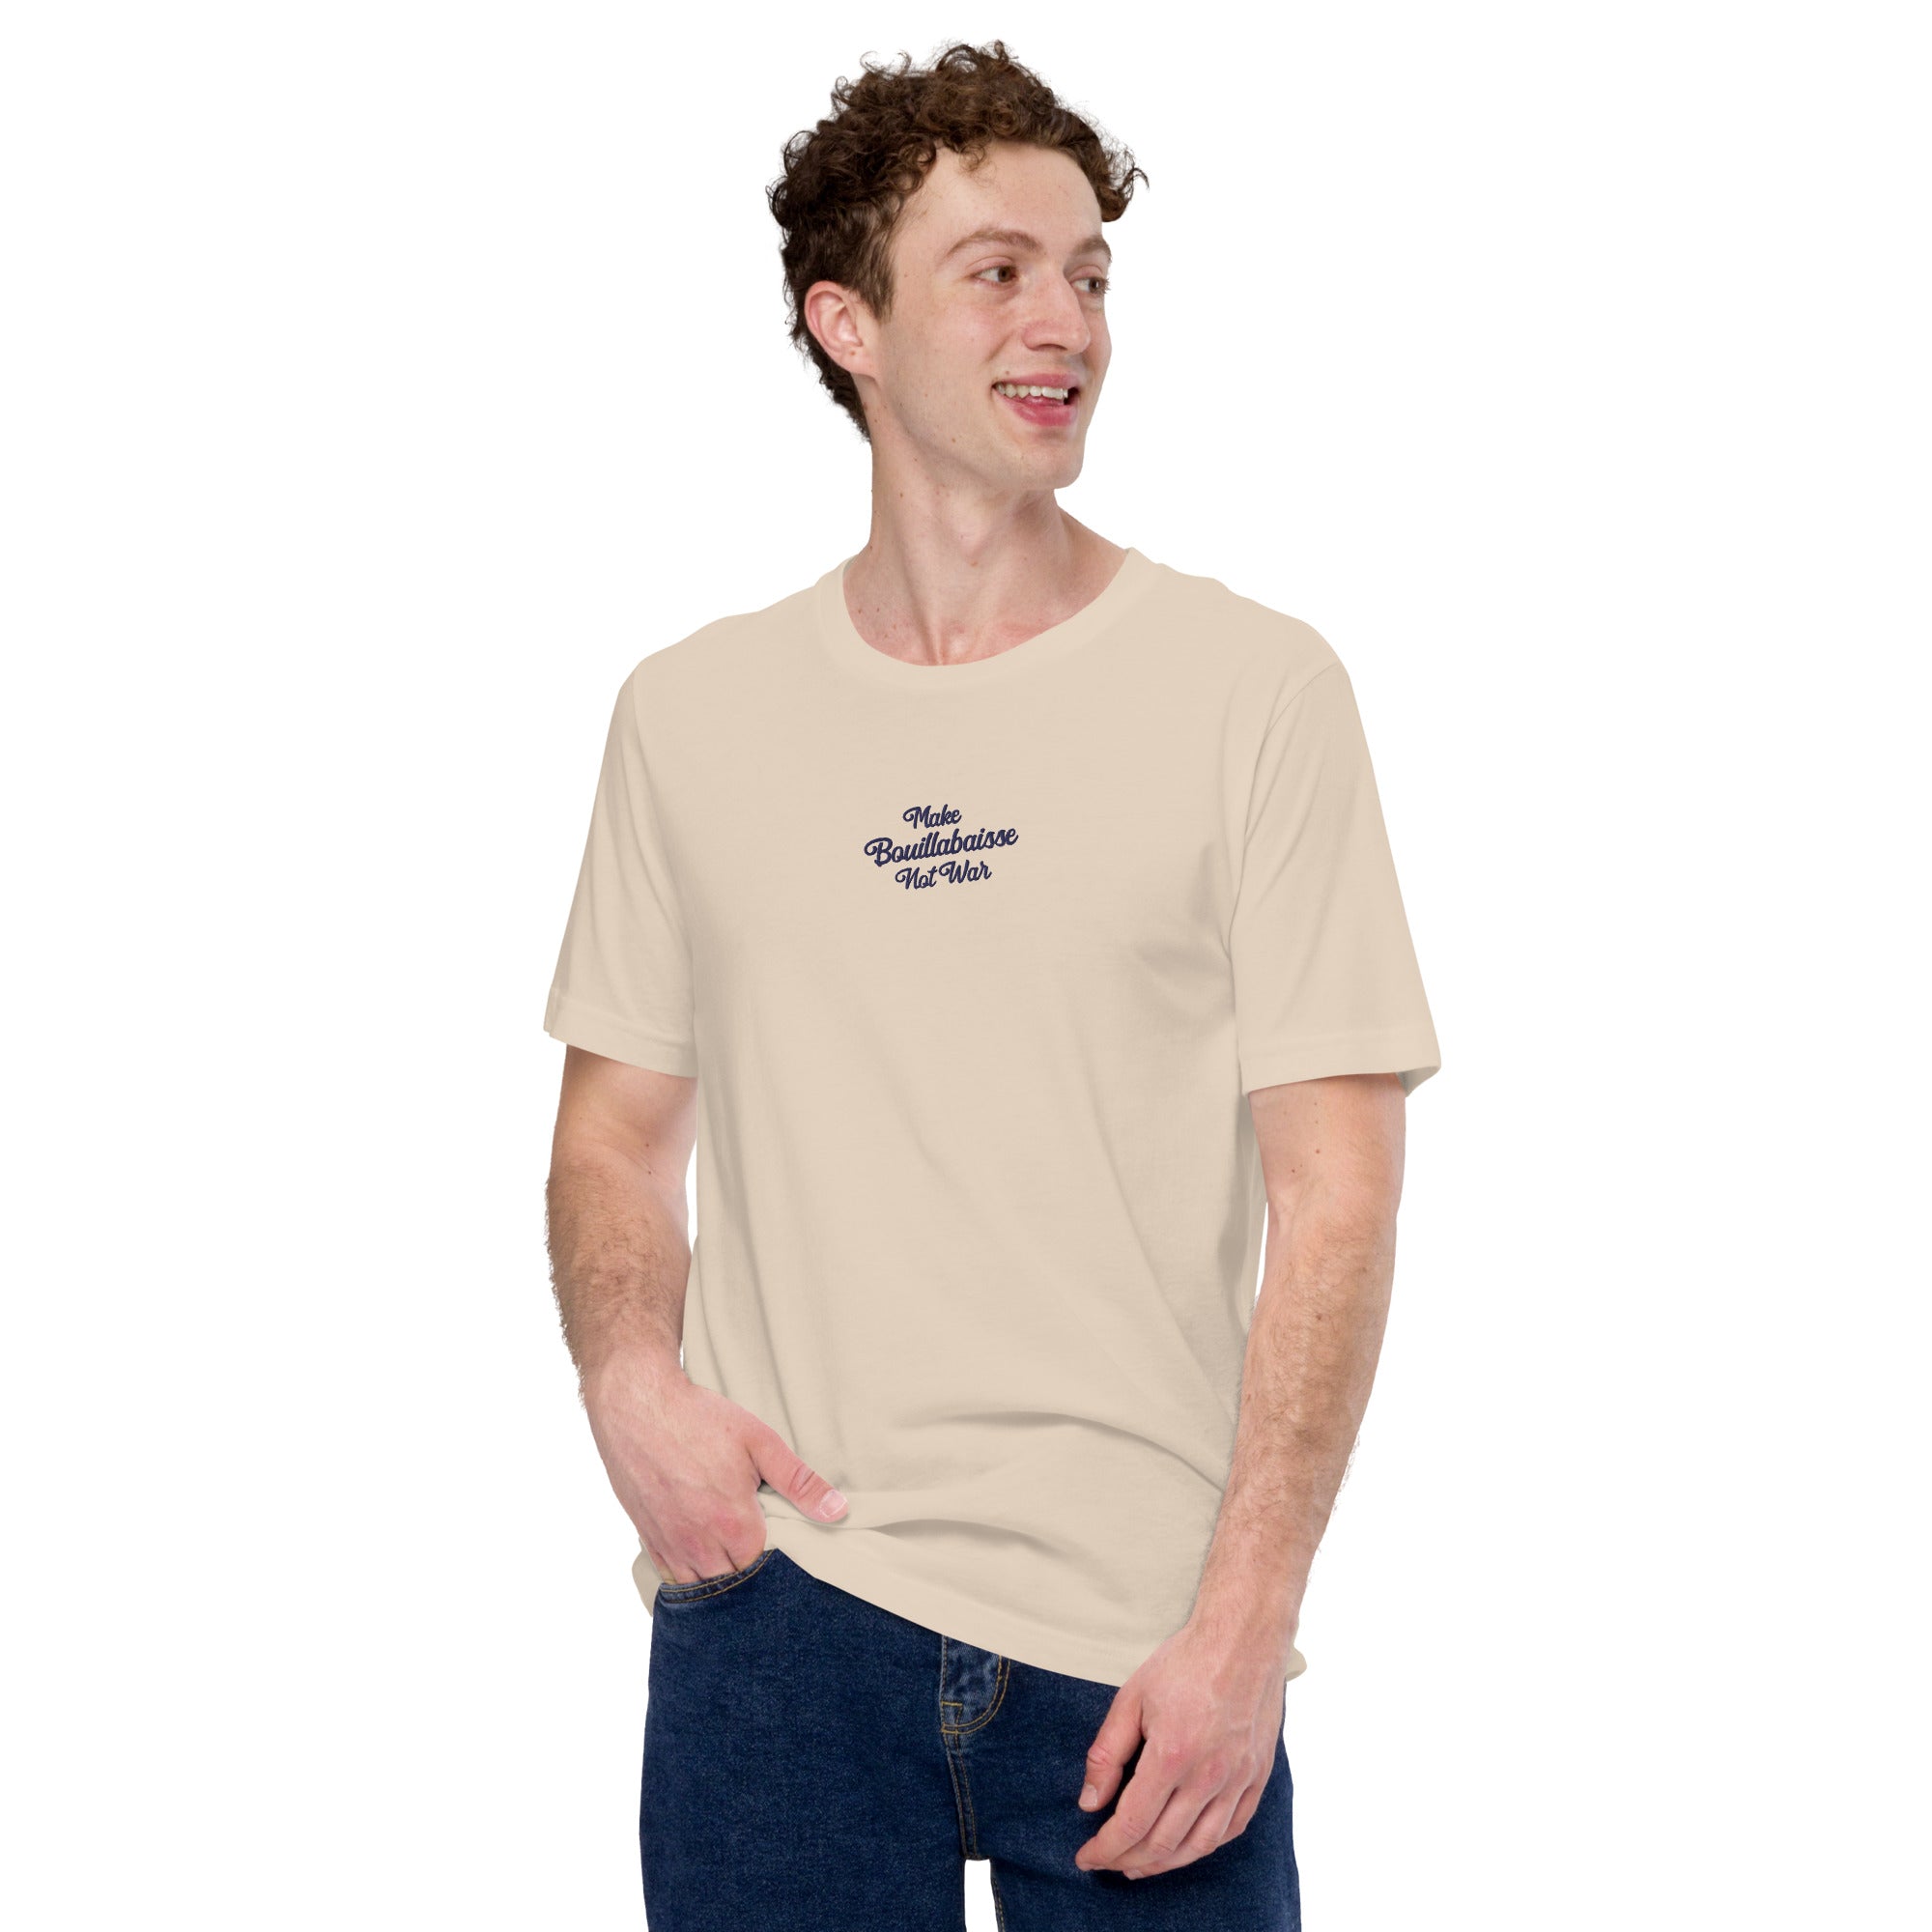 T-shirt en coton unisexe Make Bouillabaisse Not War Navy brodé sur couleurs claires